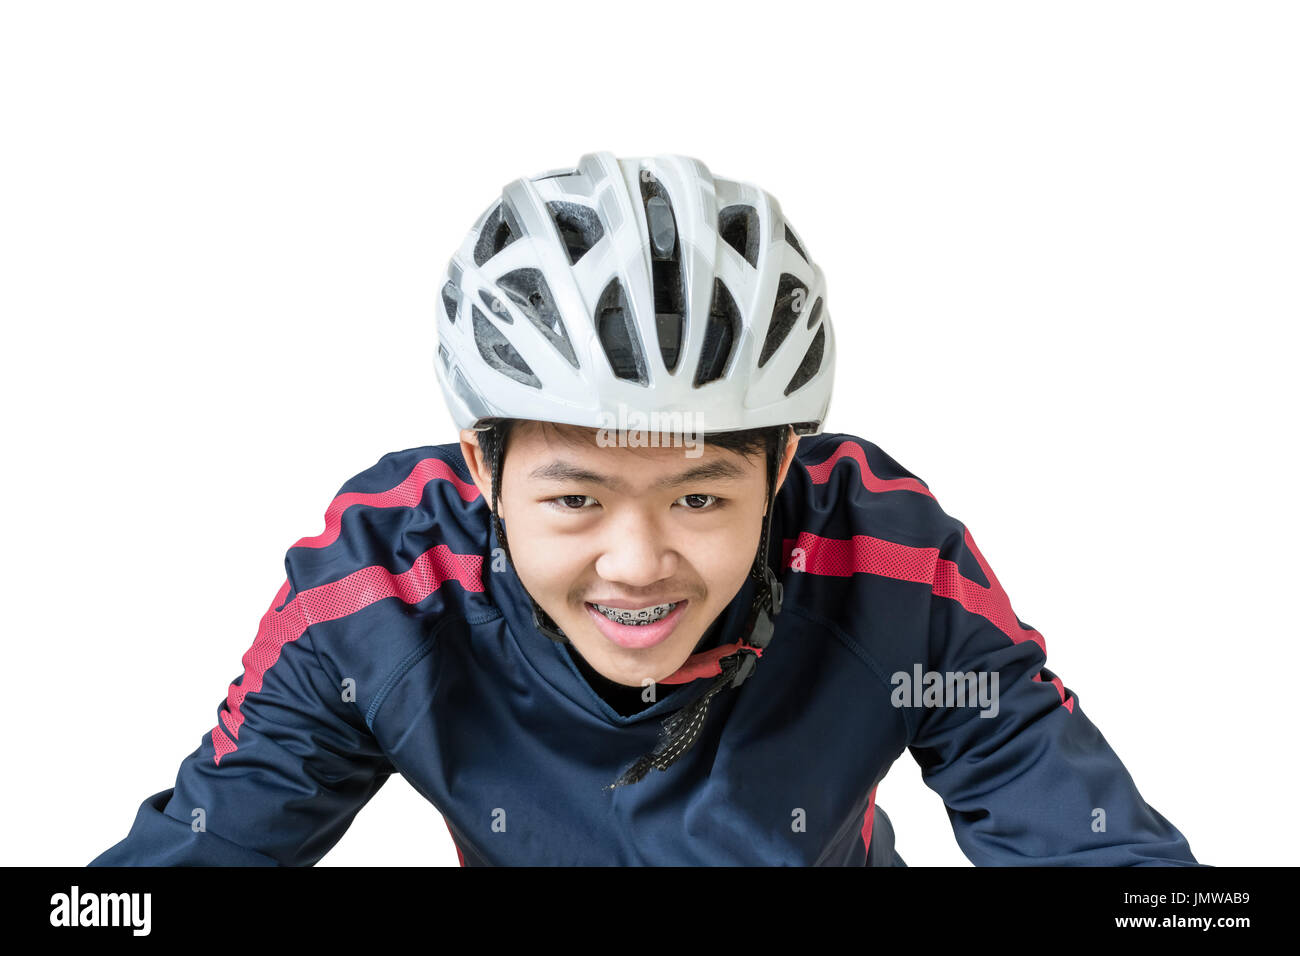 Ritratto di un uomo asiatico ciclista con casco e abbigliamento sportivo. Isolato su sfondo bianco con tracciato di ritaglio Foto Stock